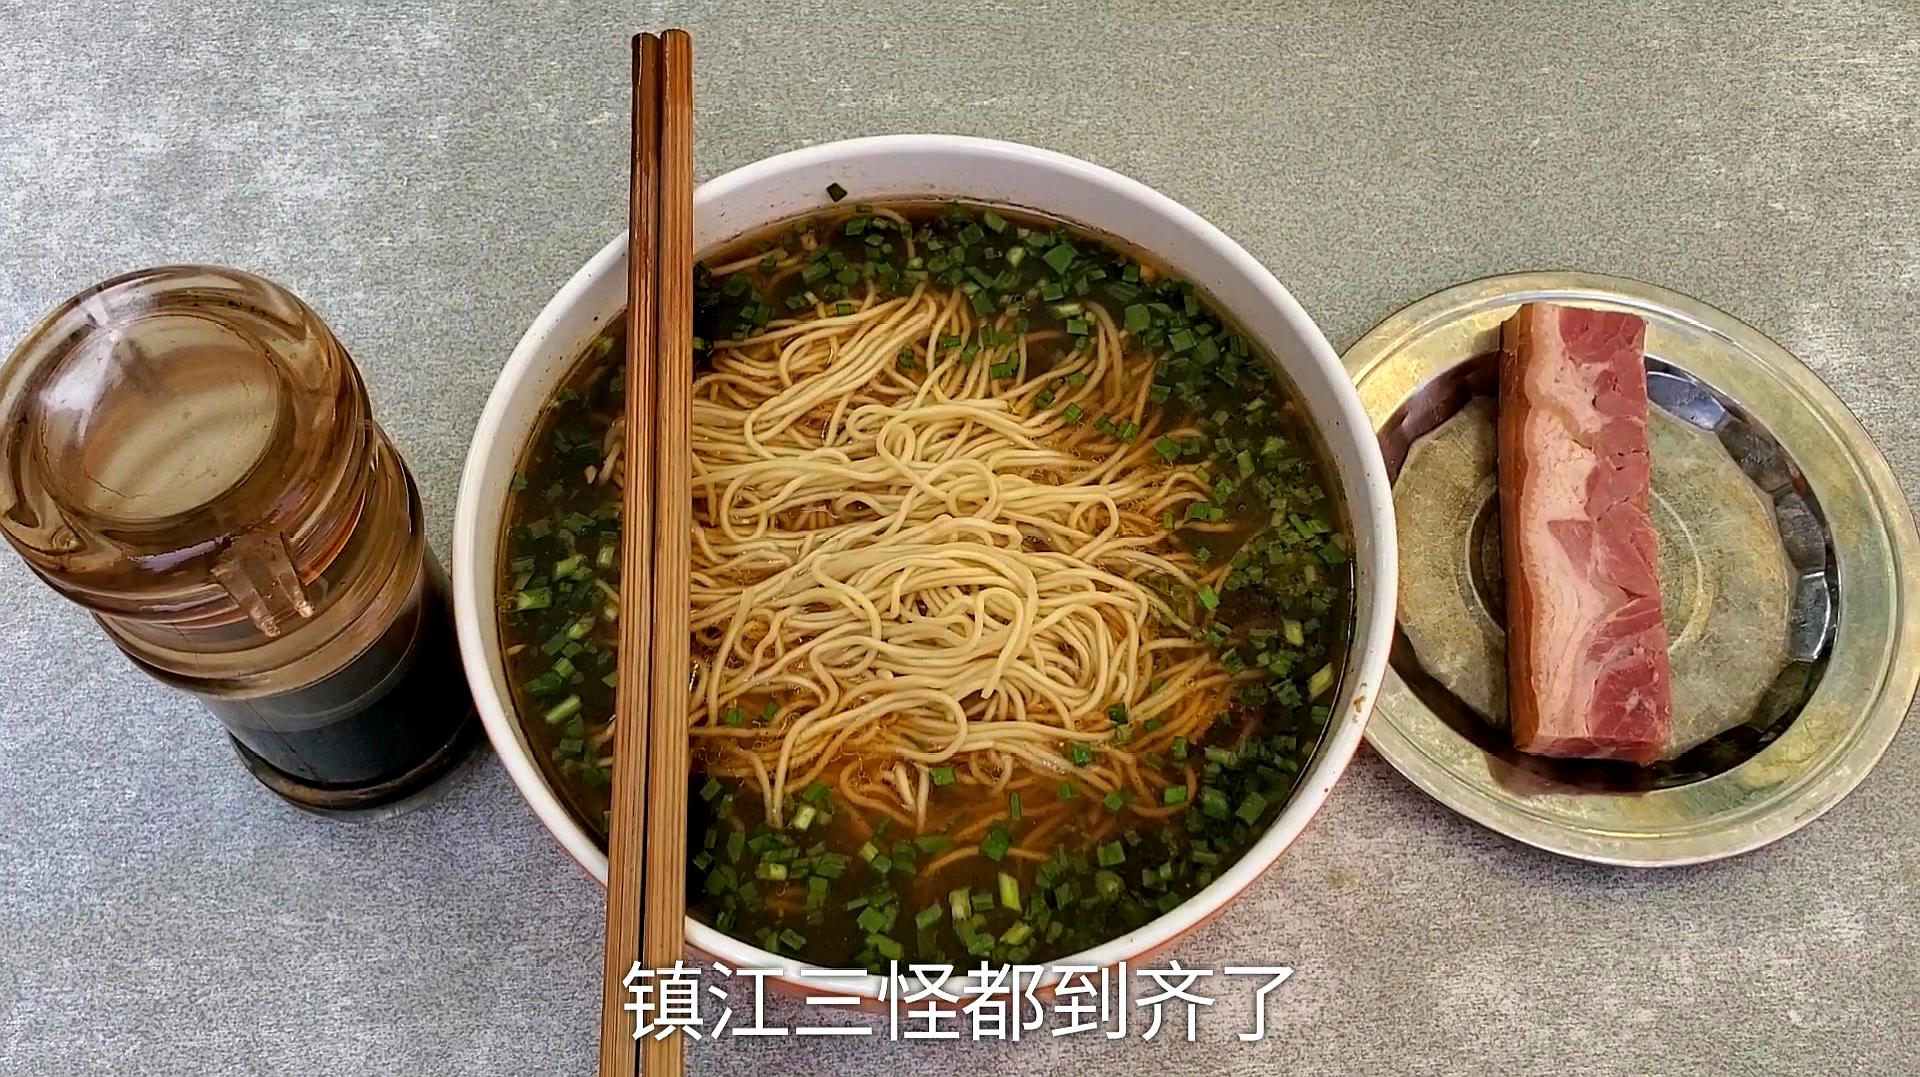 镇江最著名的美食,锅盖面,你猜这一大碗花了多少钱?